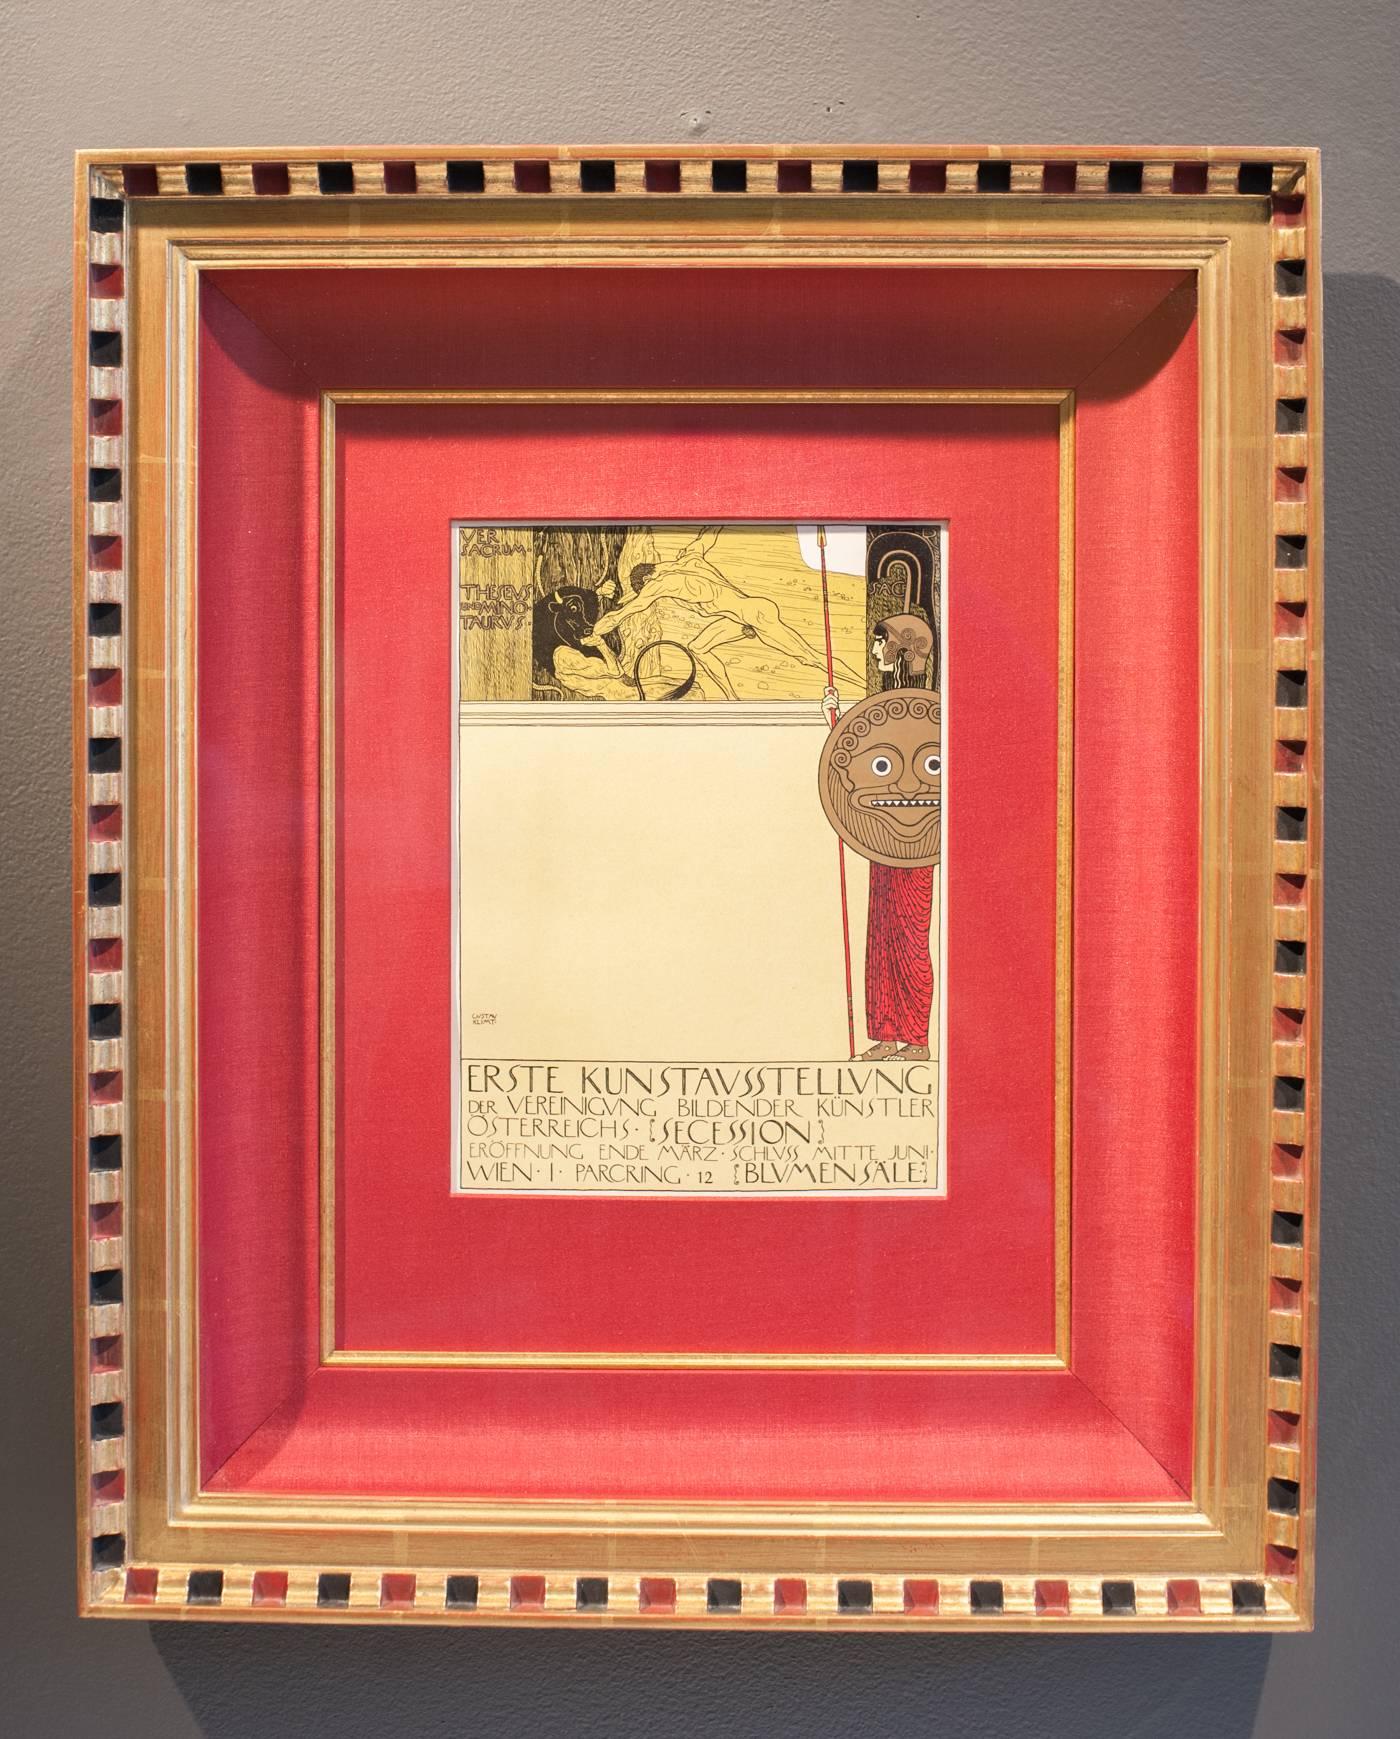 Ottokar Mascha Folio, Tafel 8: „Poster für die Ausstellung der 1. Wiener Secessionsausstellung“ – Print von Gustav Klimt